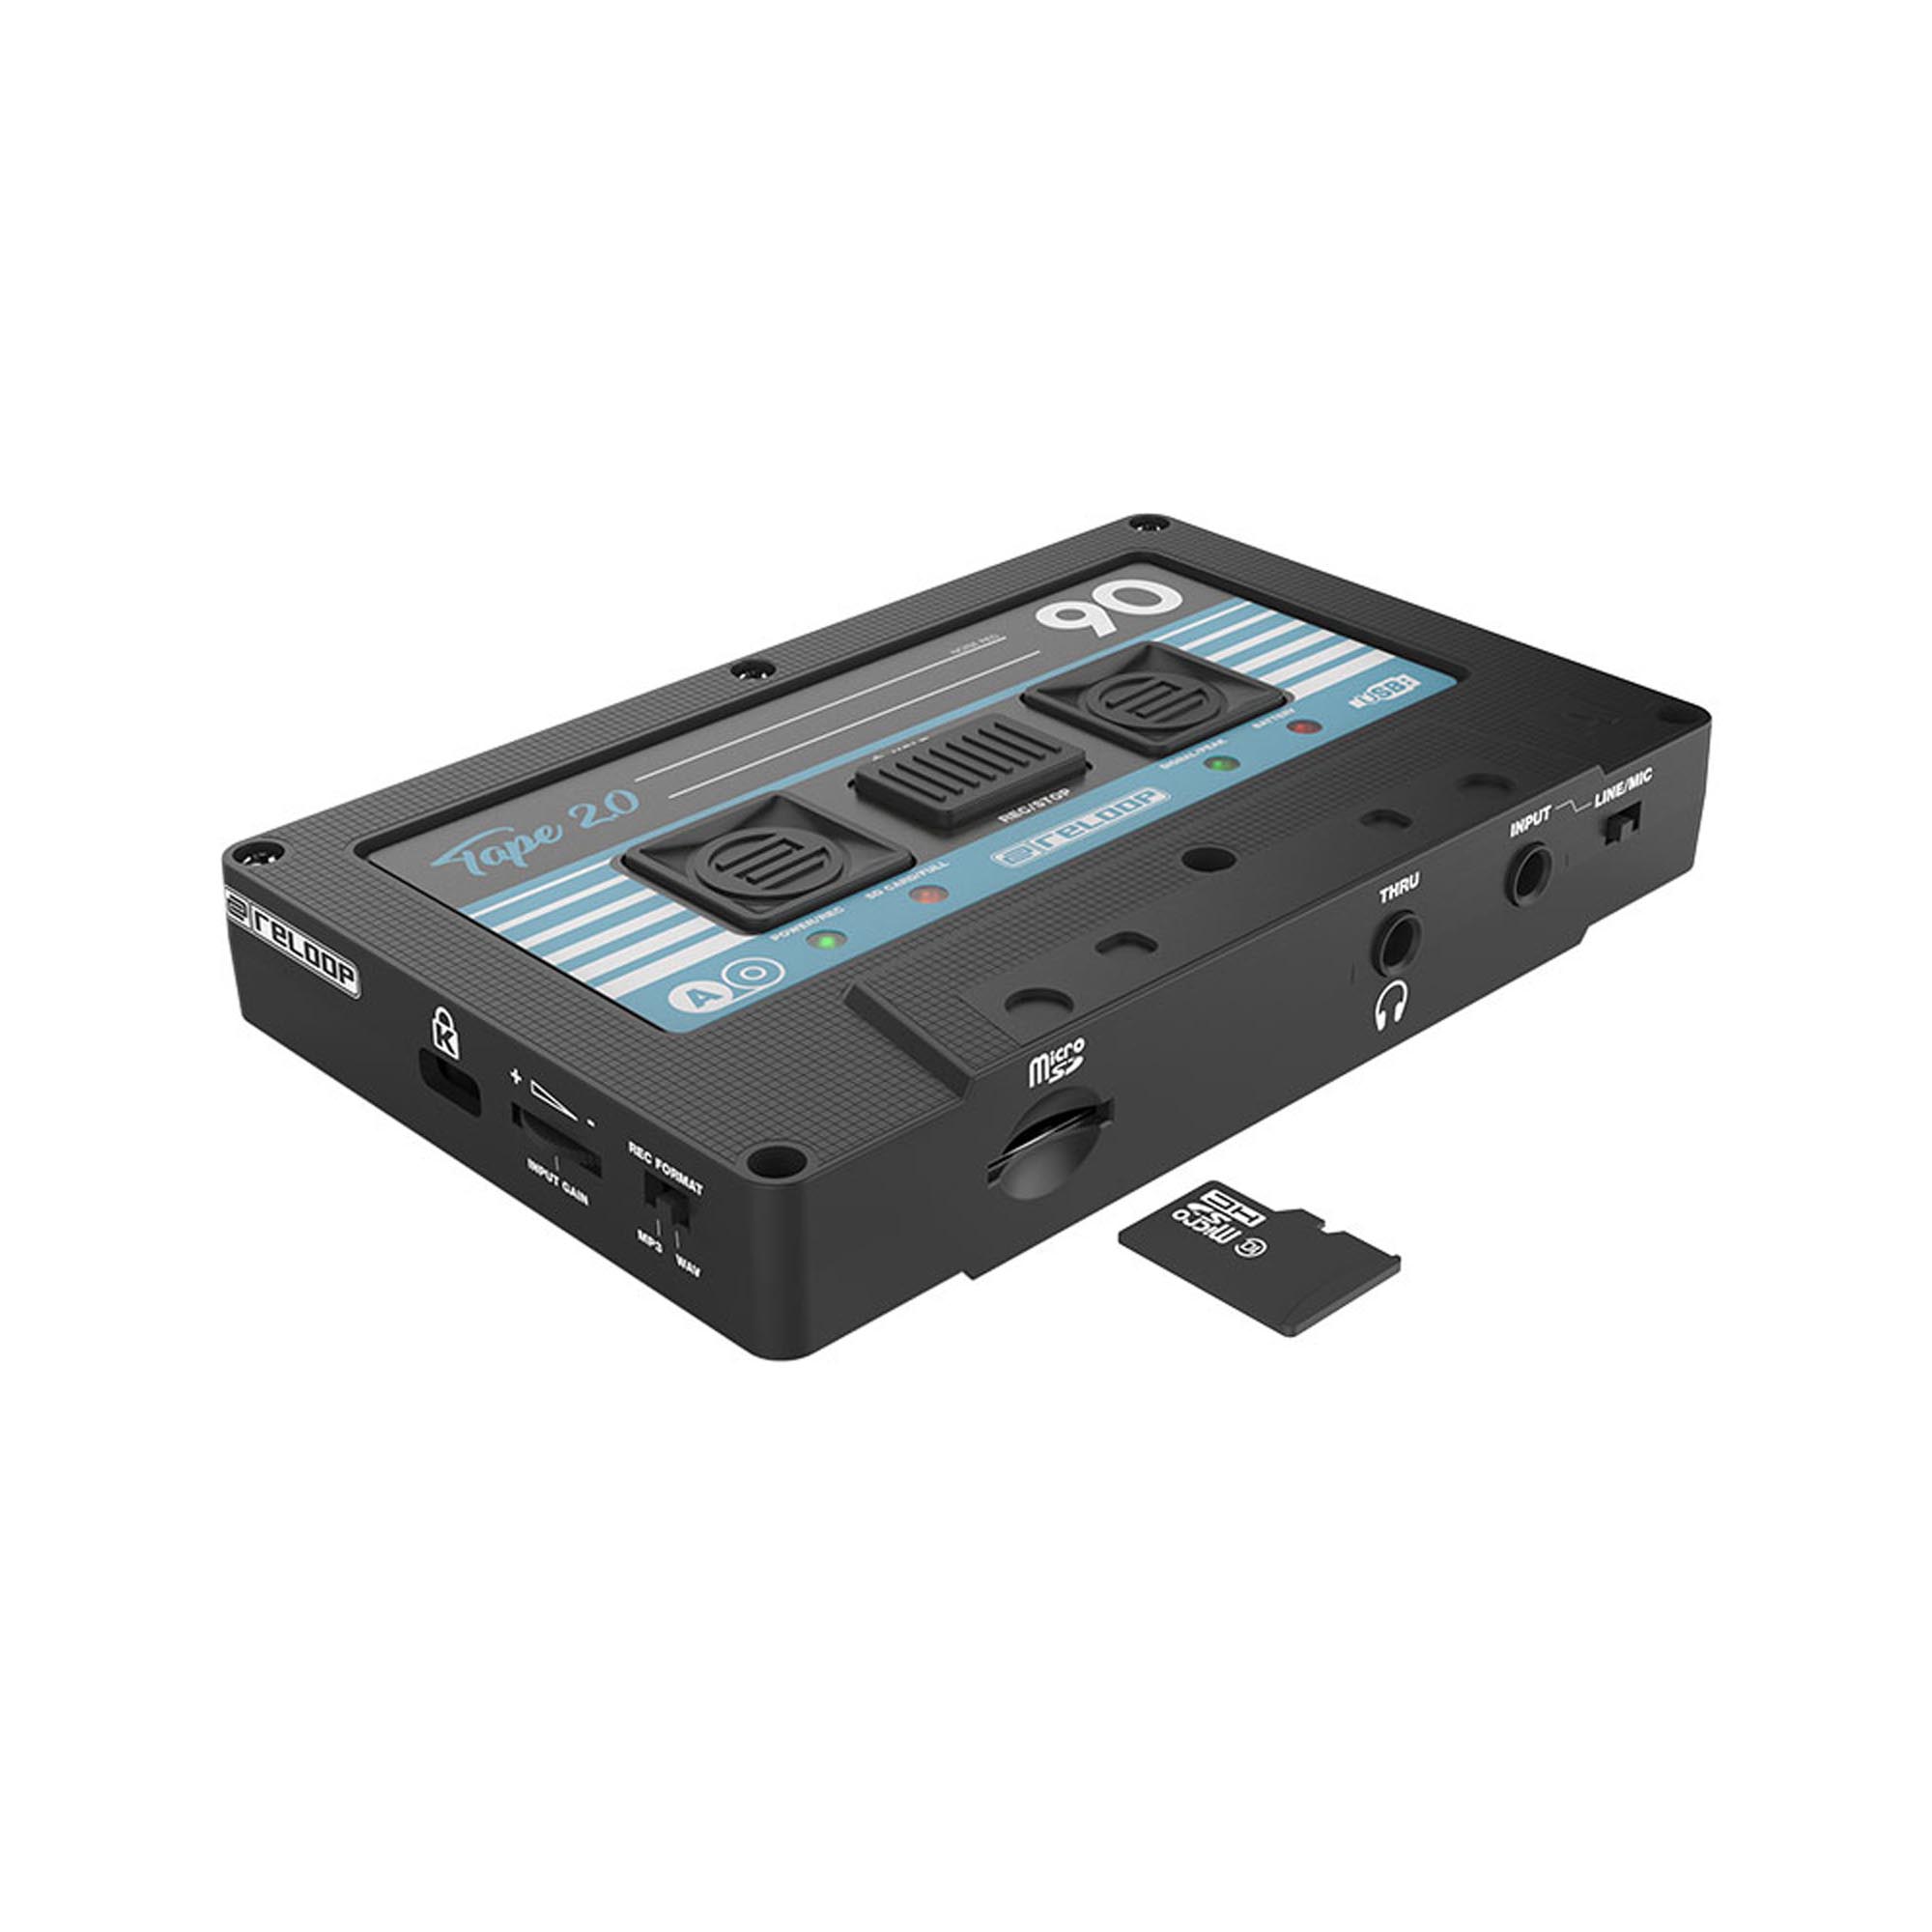 Zubehoer - Reloop TAPE 2 / USB Mixtape Recorder